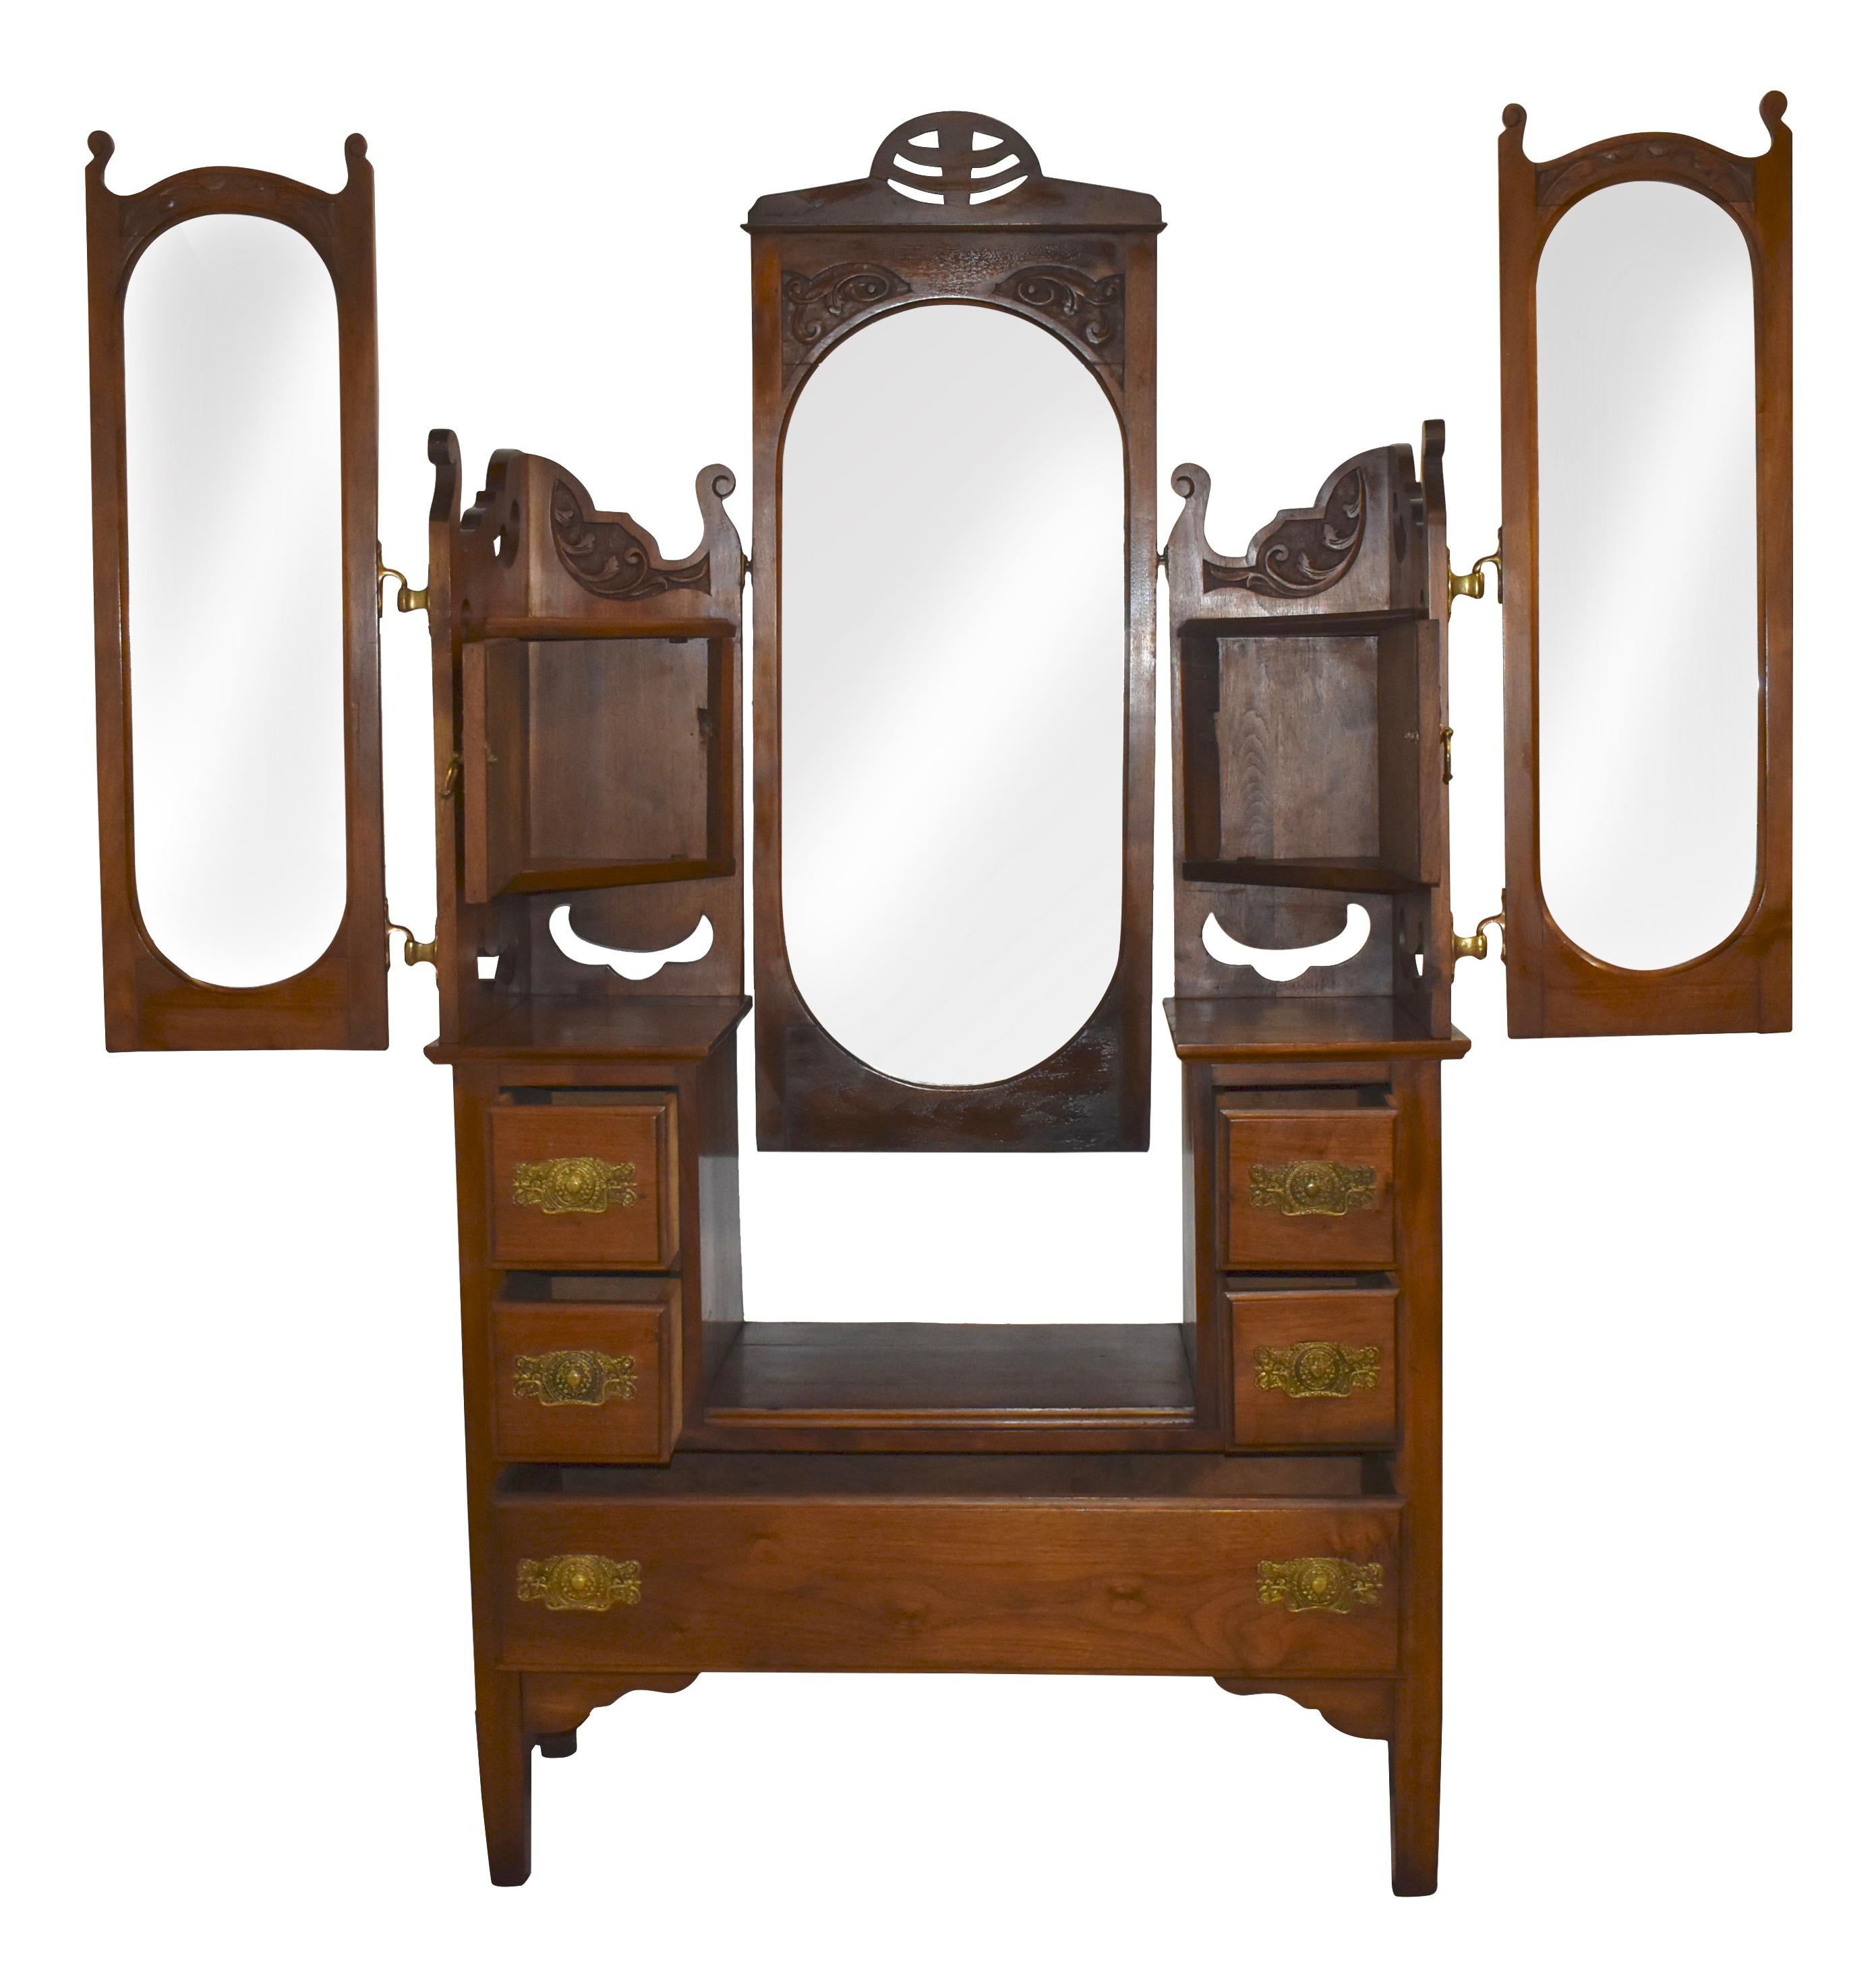 1890 dresser with mirror